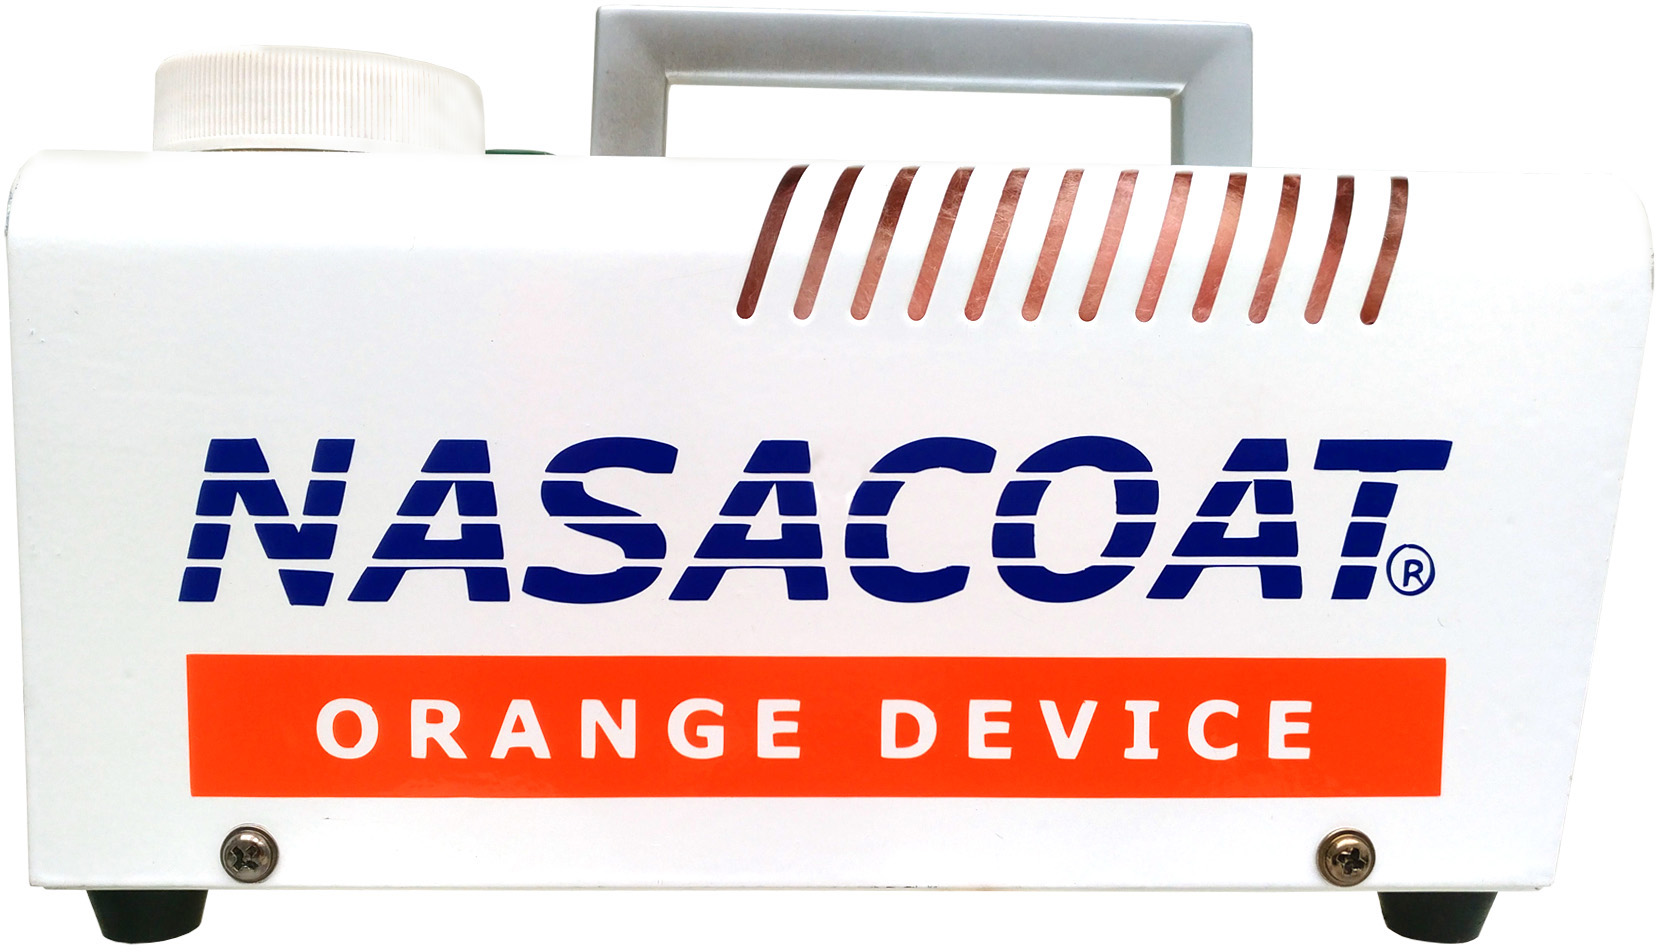 Nasacoat Orange Device